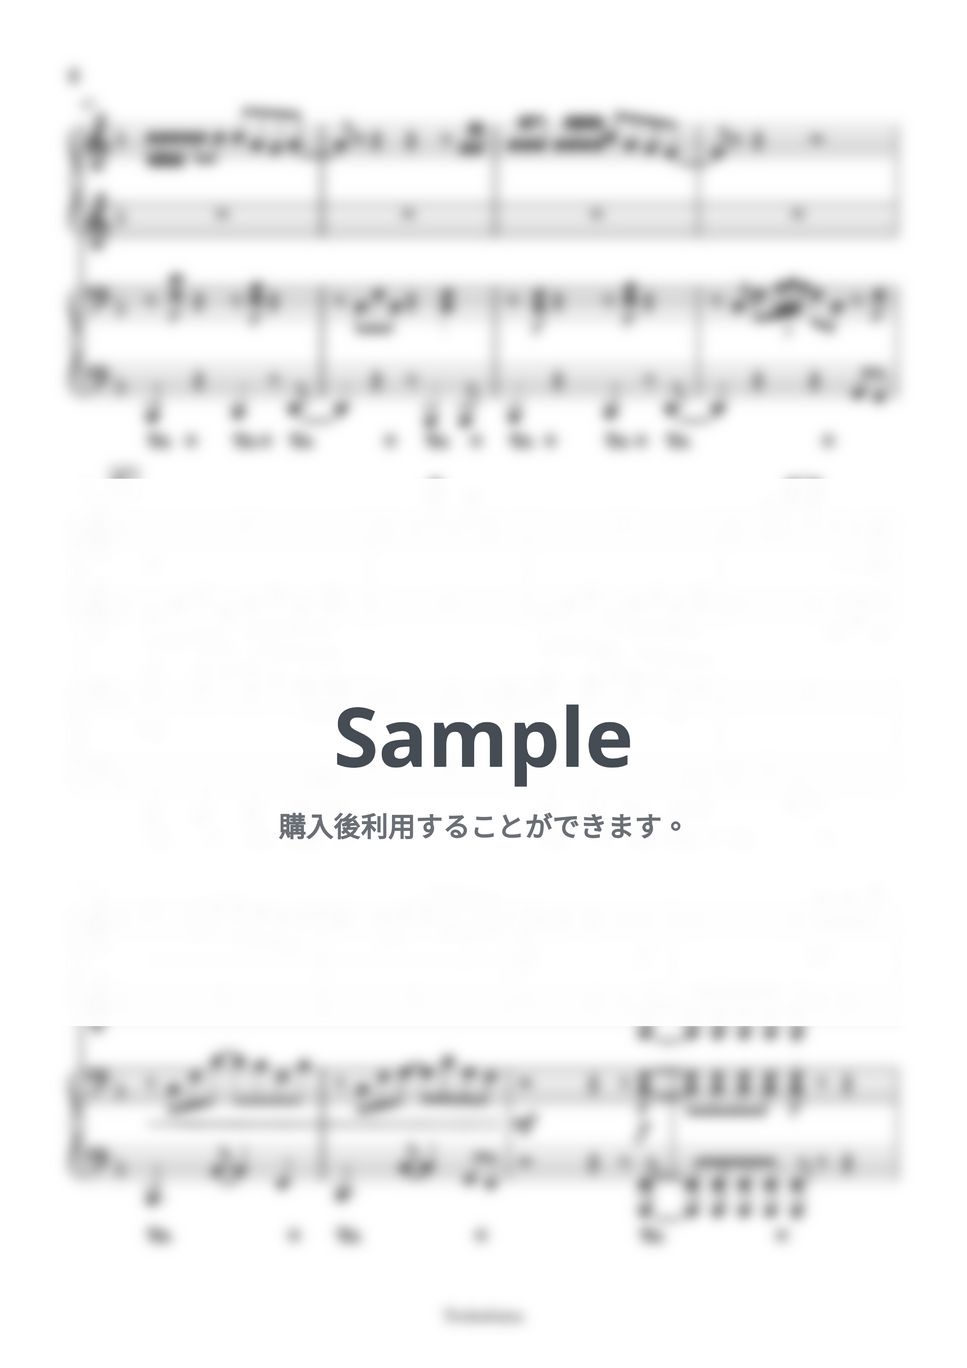 ヨルシカ - 春泥棒 (ピアノ連弾 / テレビCM（大成建設"ミャンマー"篇）) by Trohishima